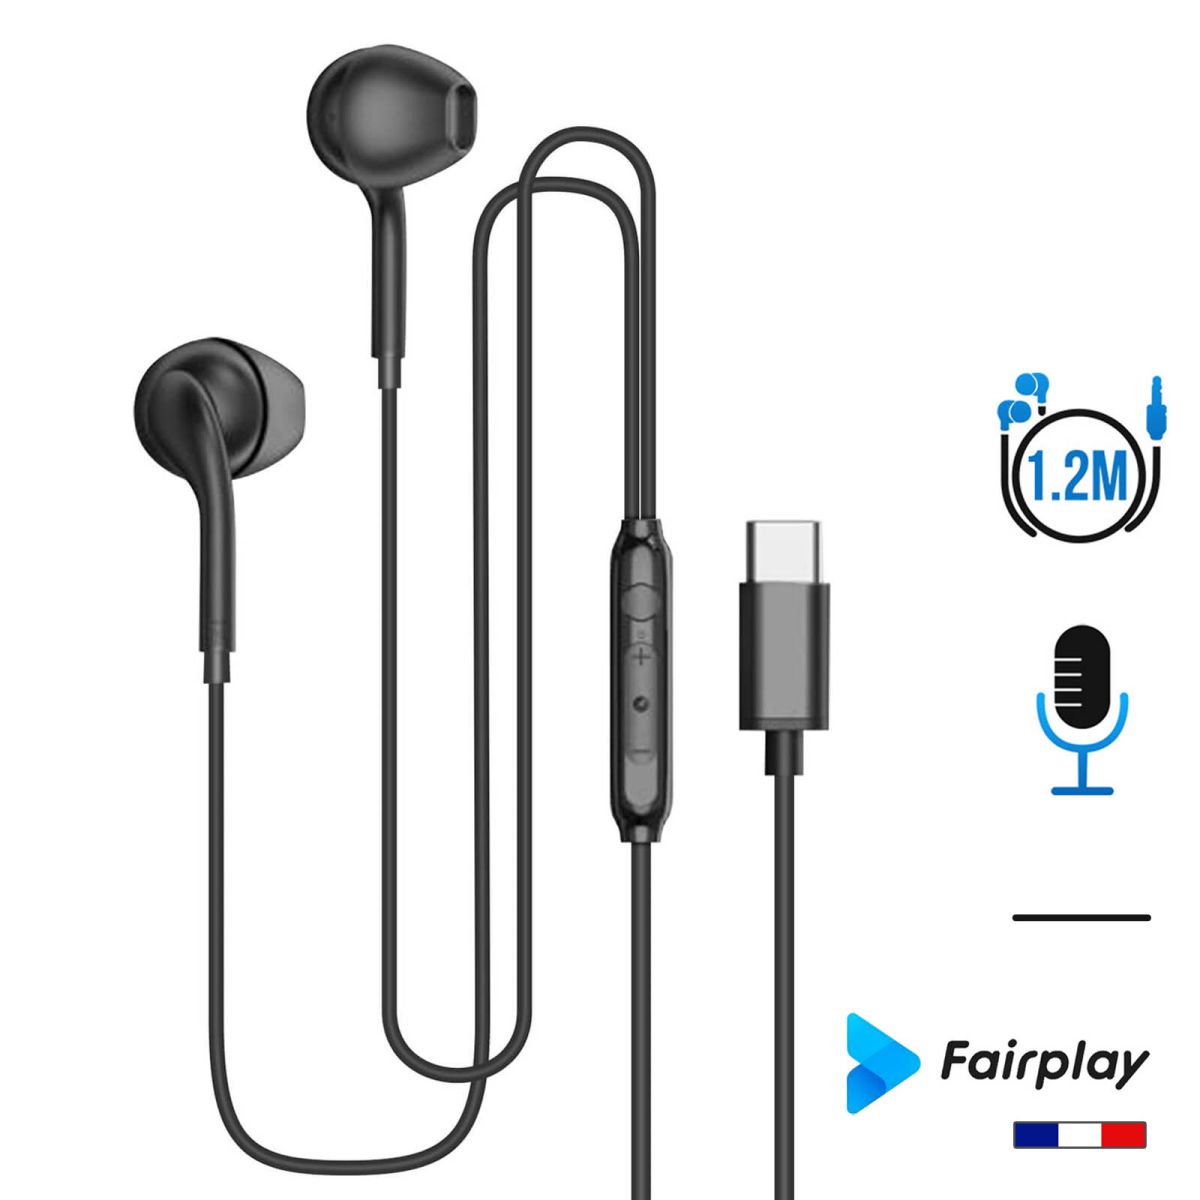 Fairplay ONYX ecouteur USB-C Ecouteur noir occasion seconde main chez